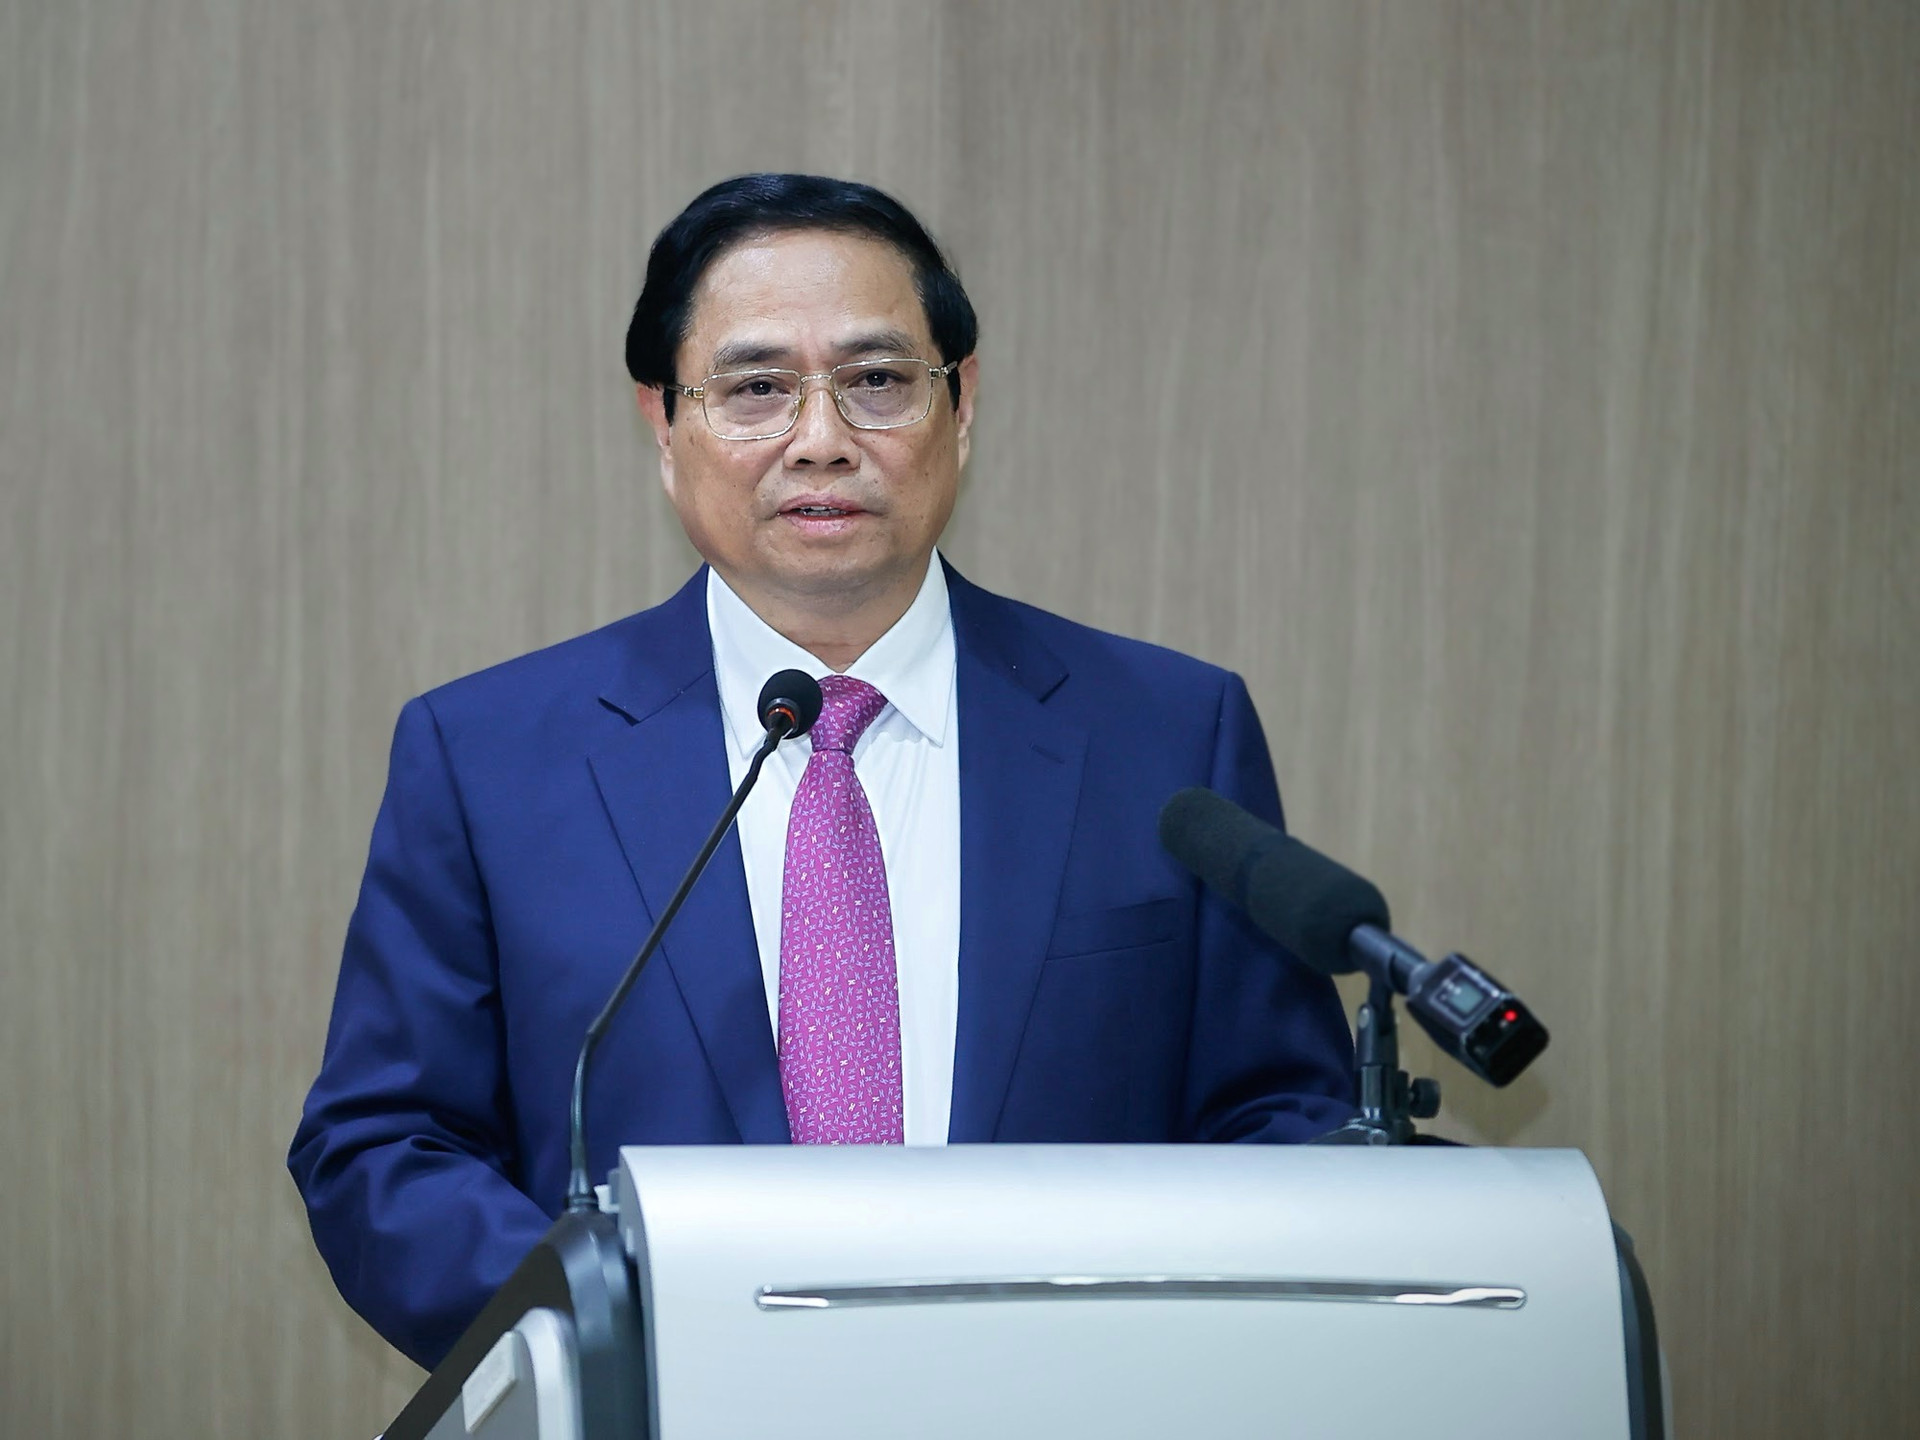 Thủ tướng gửi thông điệp quan trọng trong phát biểu chính sách tại Đại học Quốc gia của Hàn Quốc- Ảnh 3.